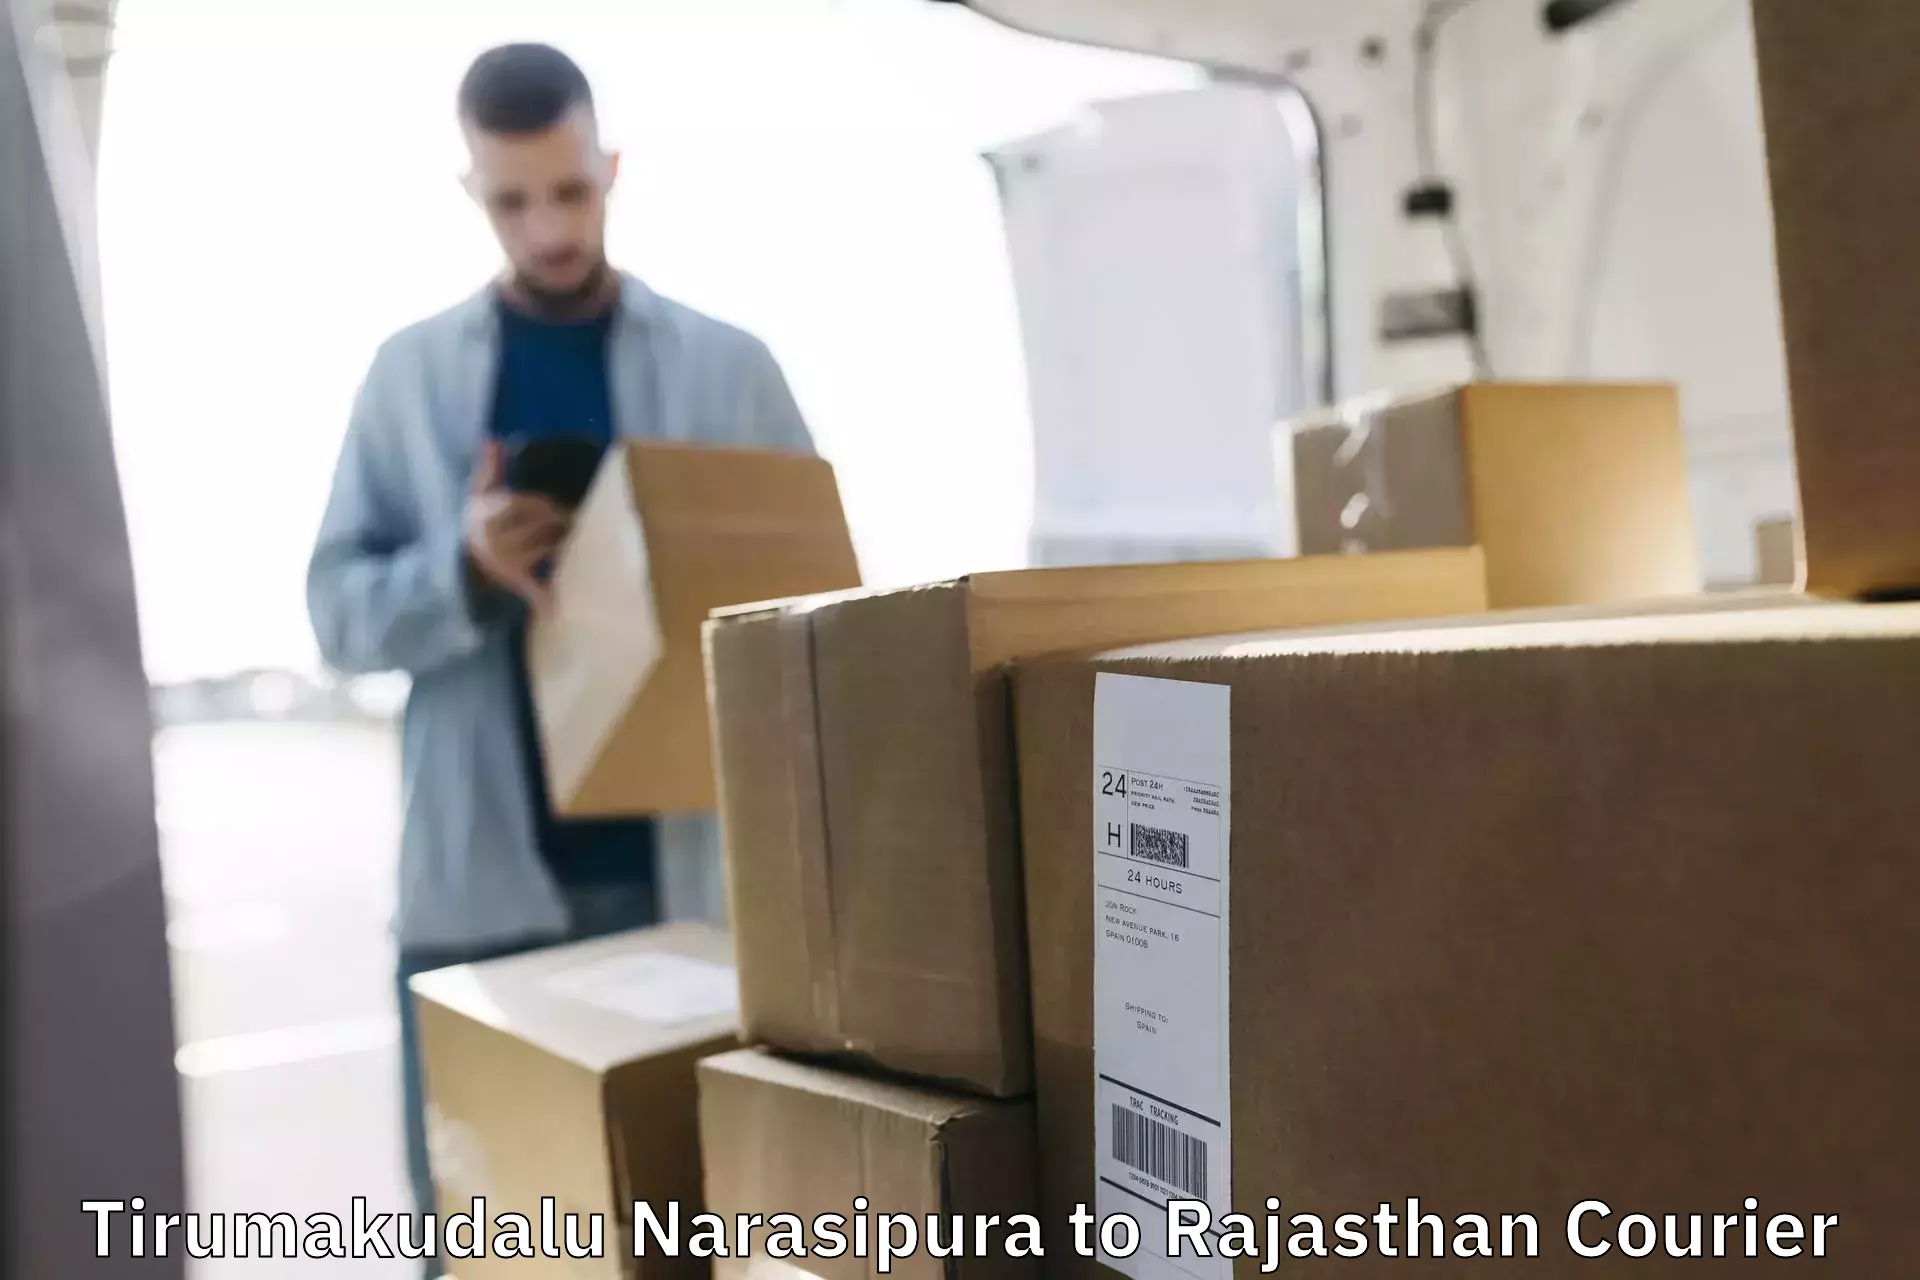 Courier app Tirumakudalu Narasipura to Rajasthan